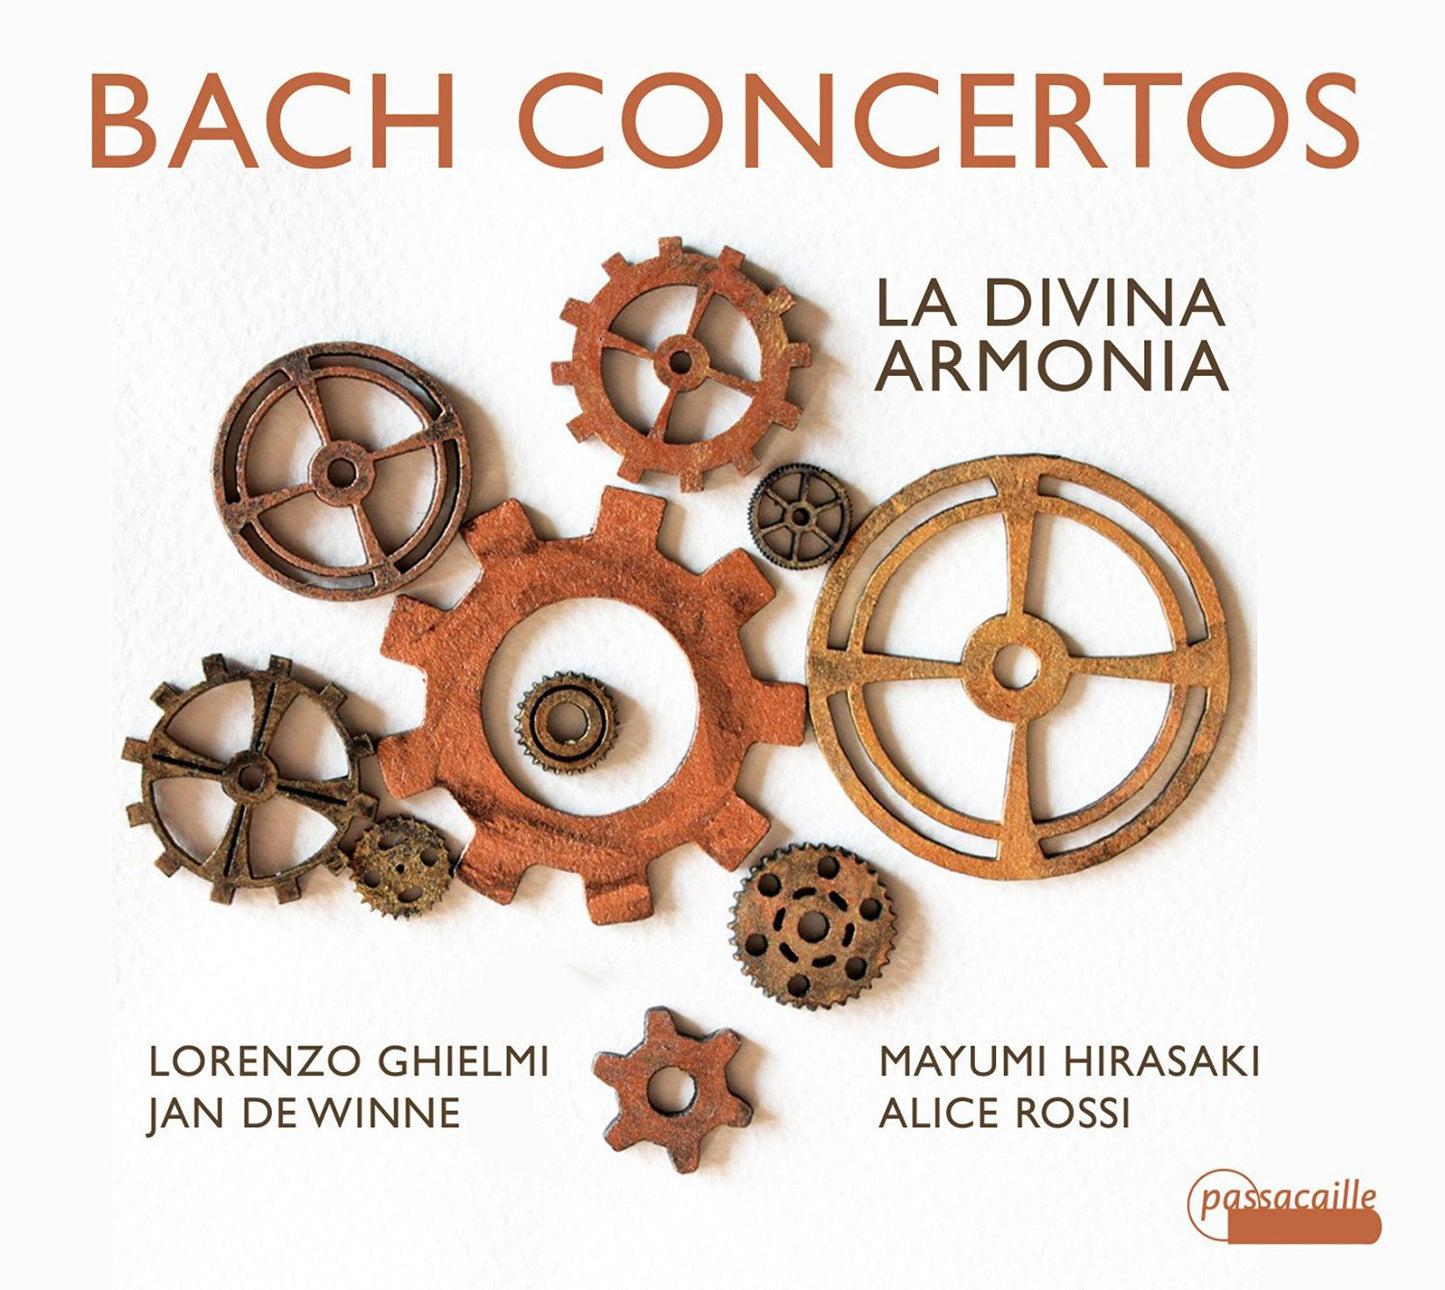 Bach: Concertos, Cantata "Non sa che sia dolore" - La Divina Armonia